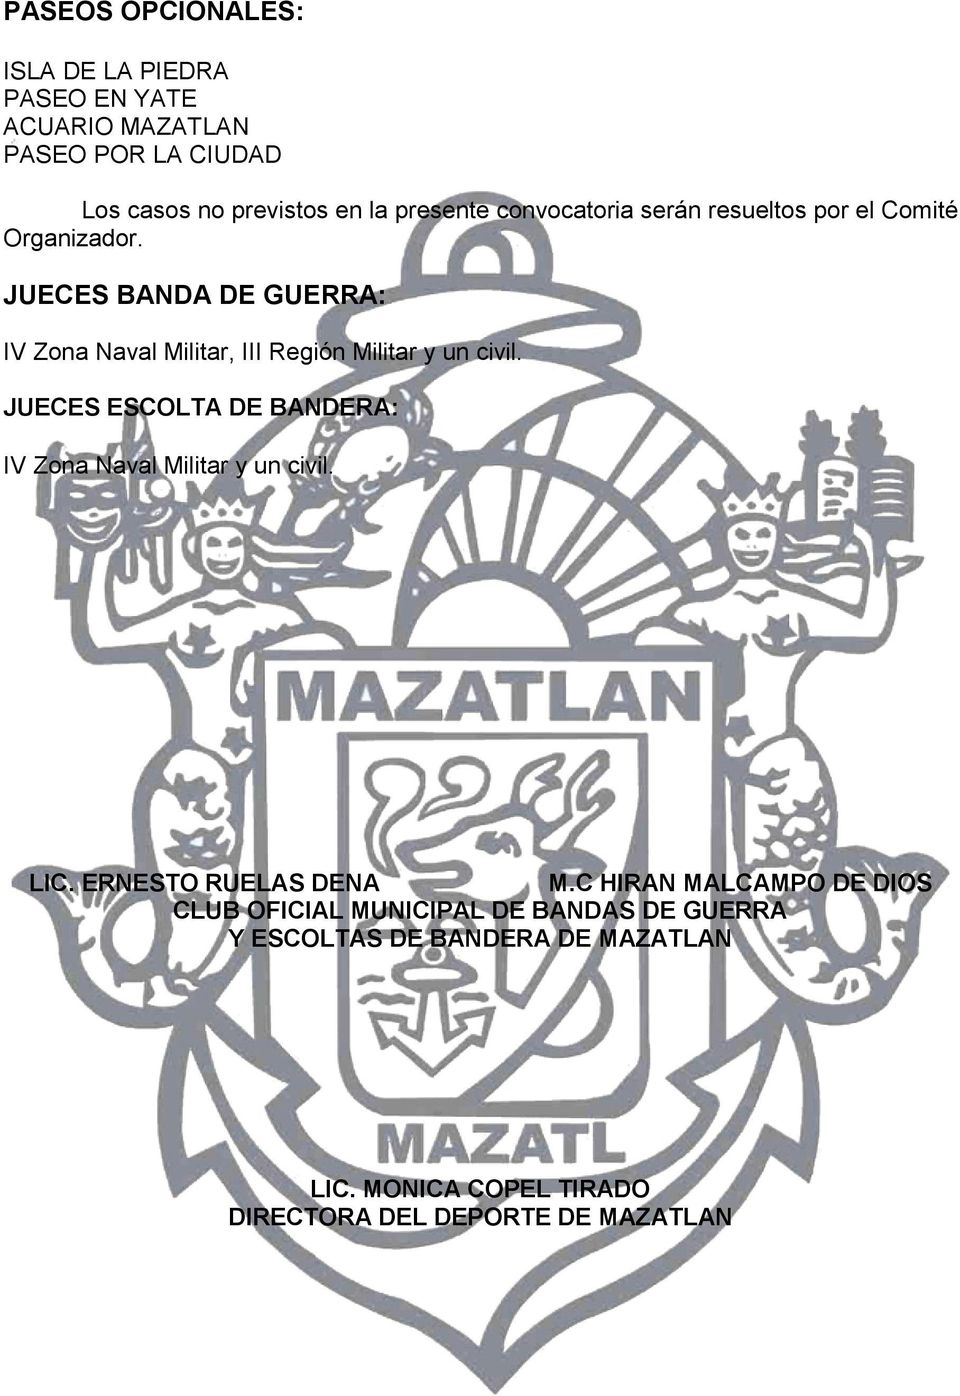 JUECES BANDA DE GUERRA: IV Zona Naval Militar, III Región Militar y un civil.